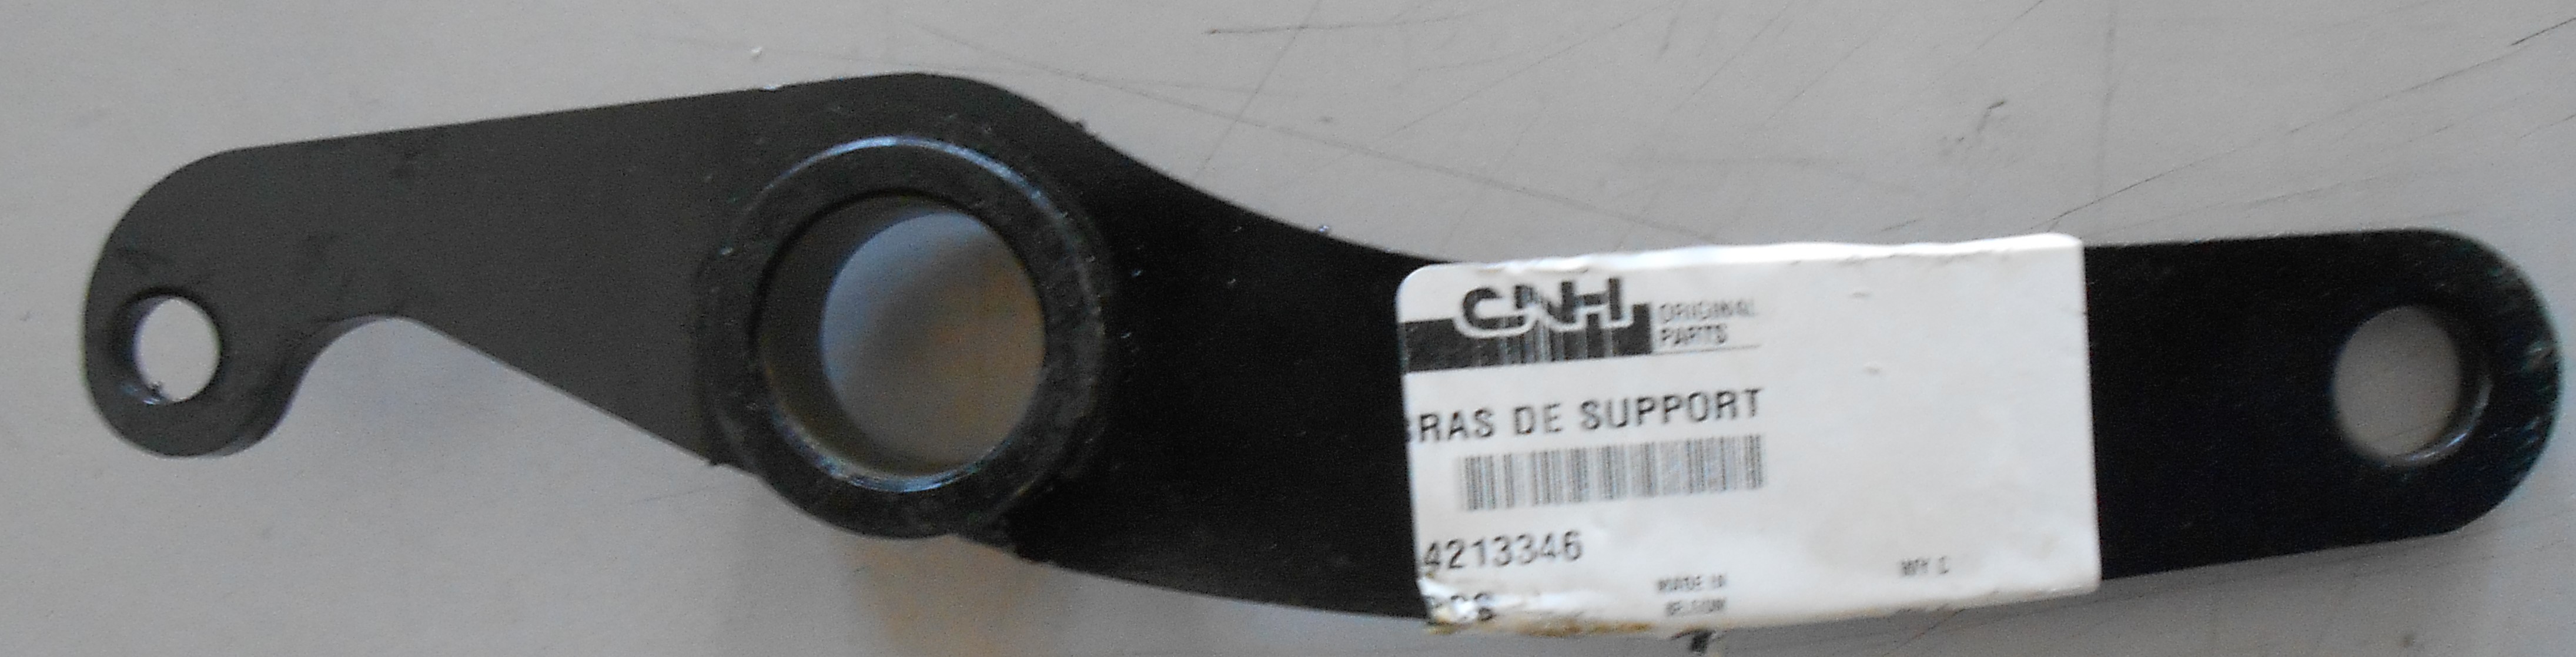 Опорный рычаг CX 84213346